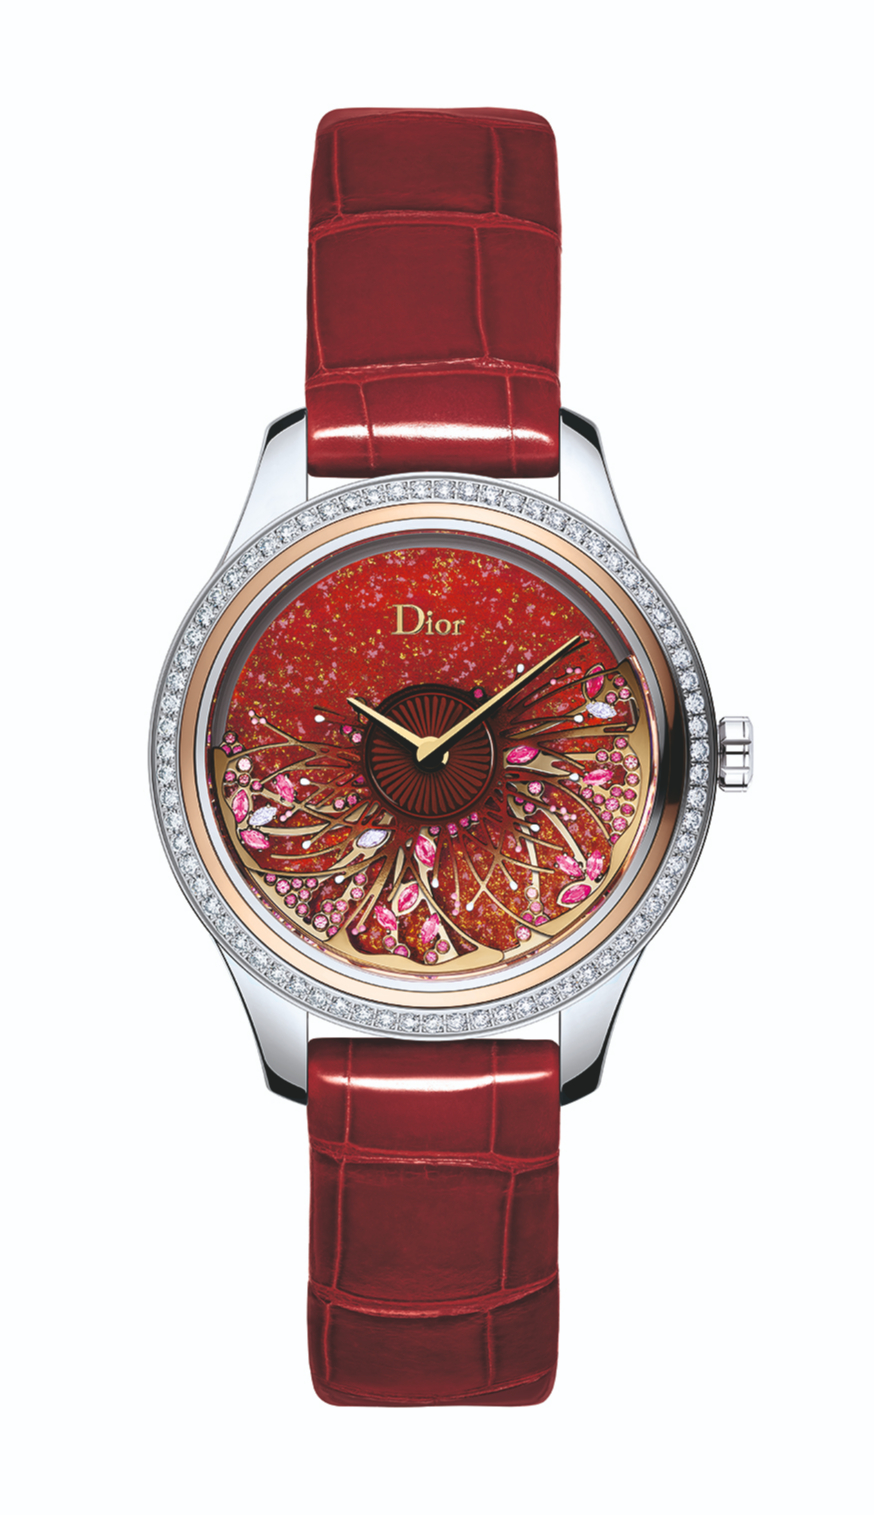 Часы Dior Grand Bal Jardin Fleuri, Dior Horlogerie